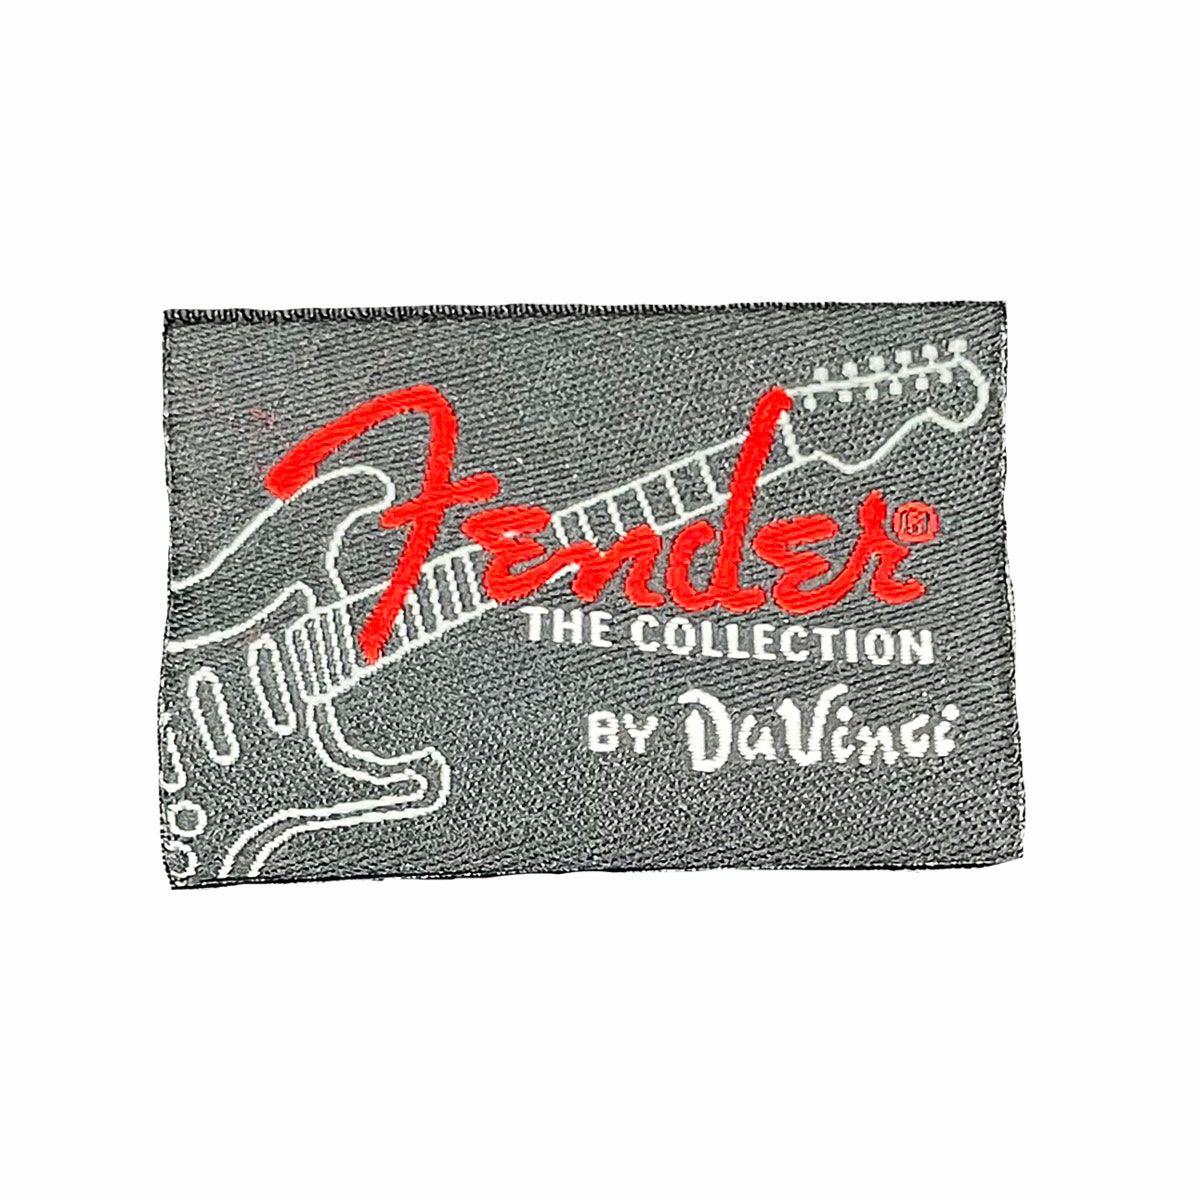 DaVinci Fender label